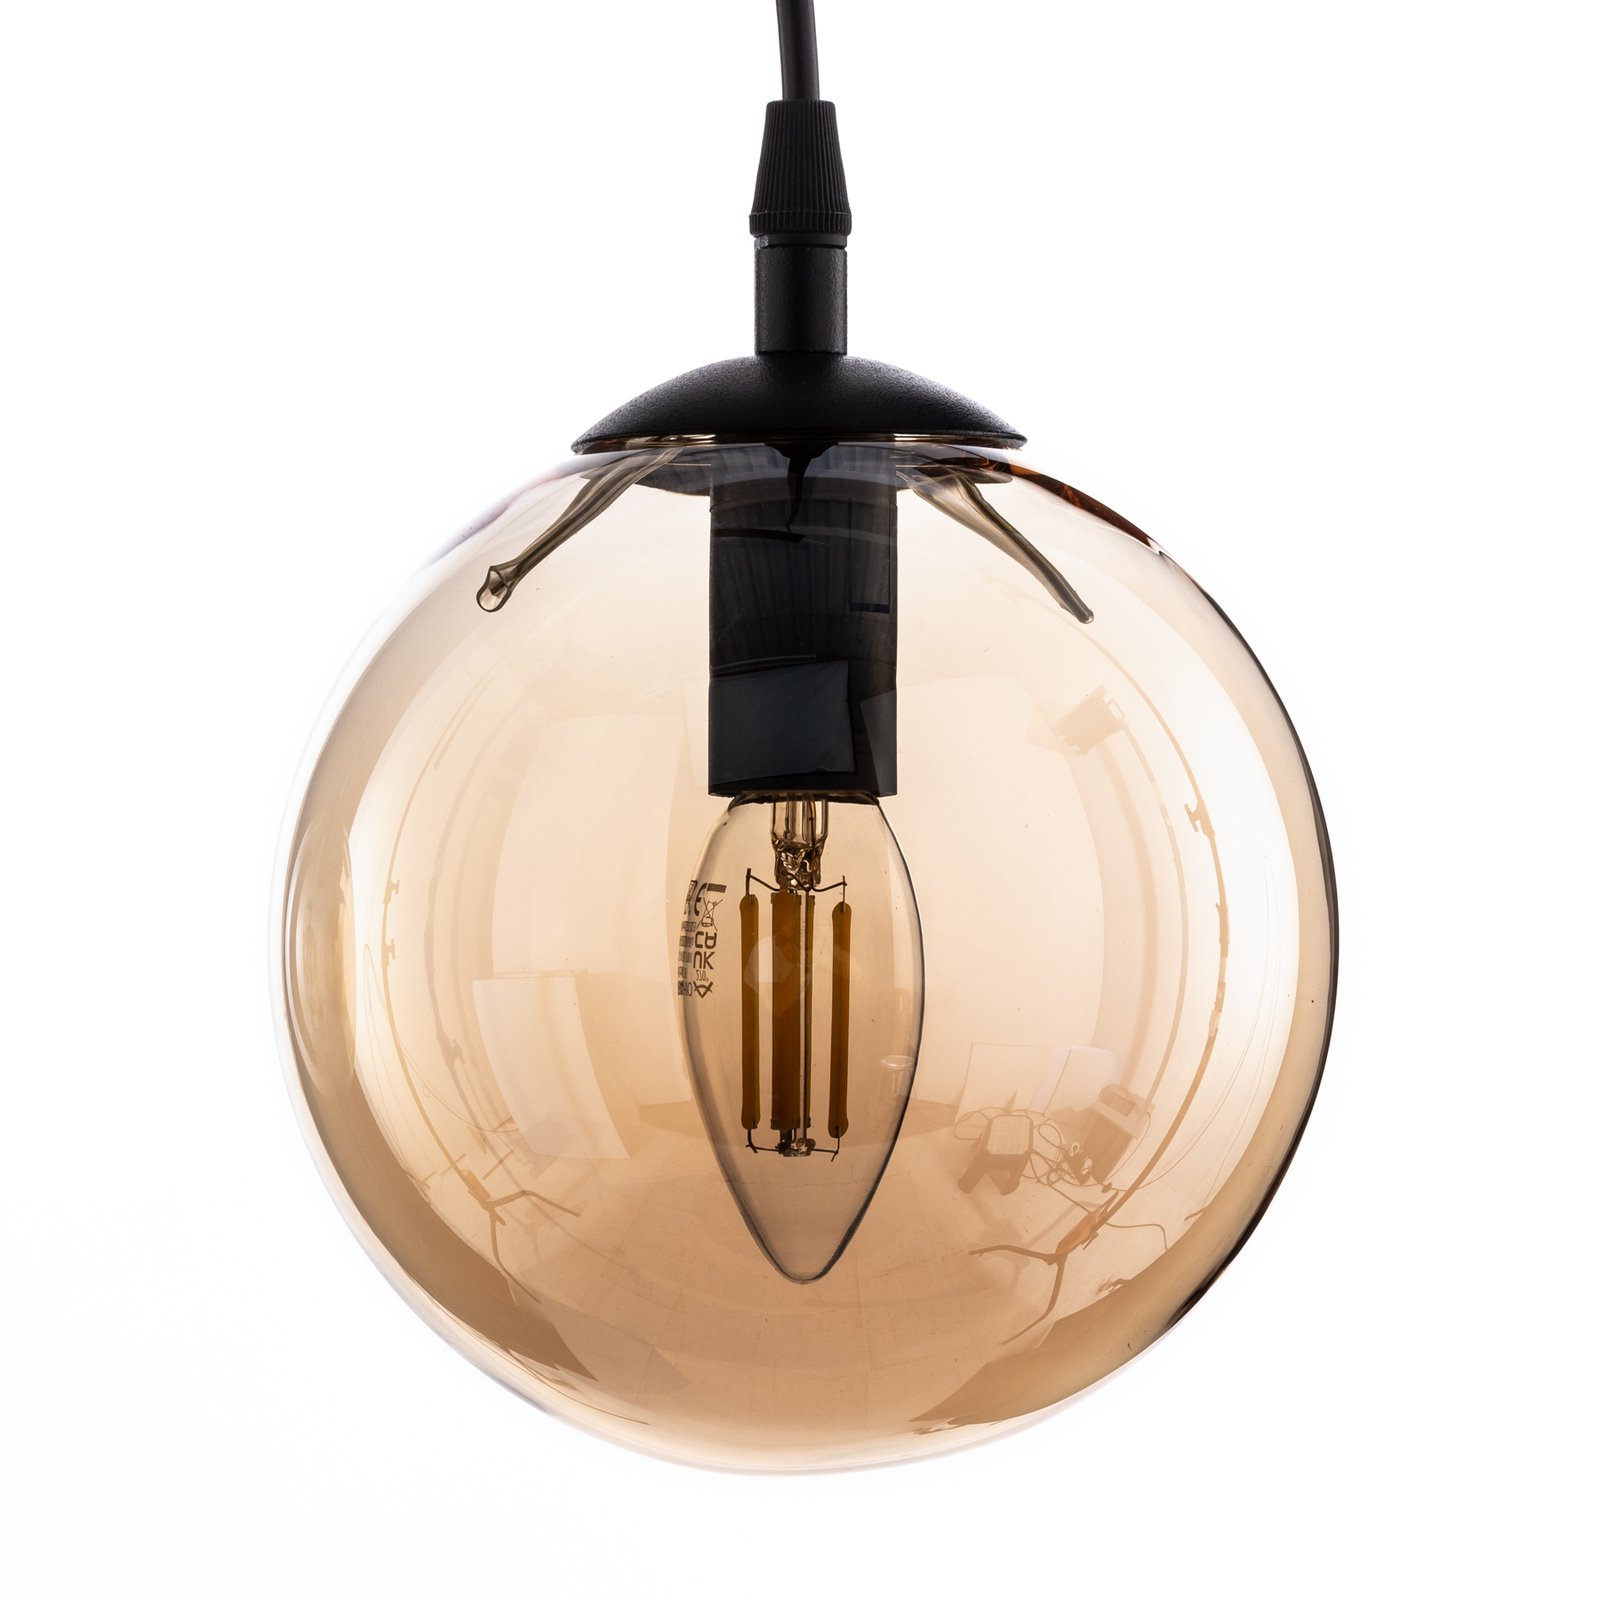 Glassy taklampa, 3-lampig, rak, svart, bärnstensfärgad, glas